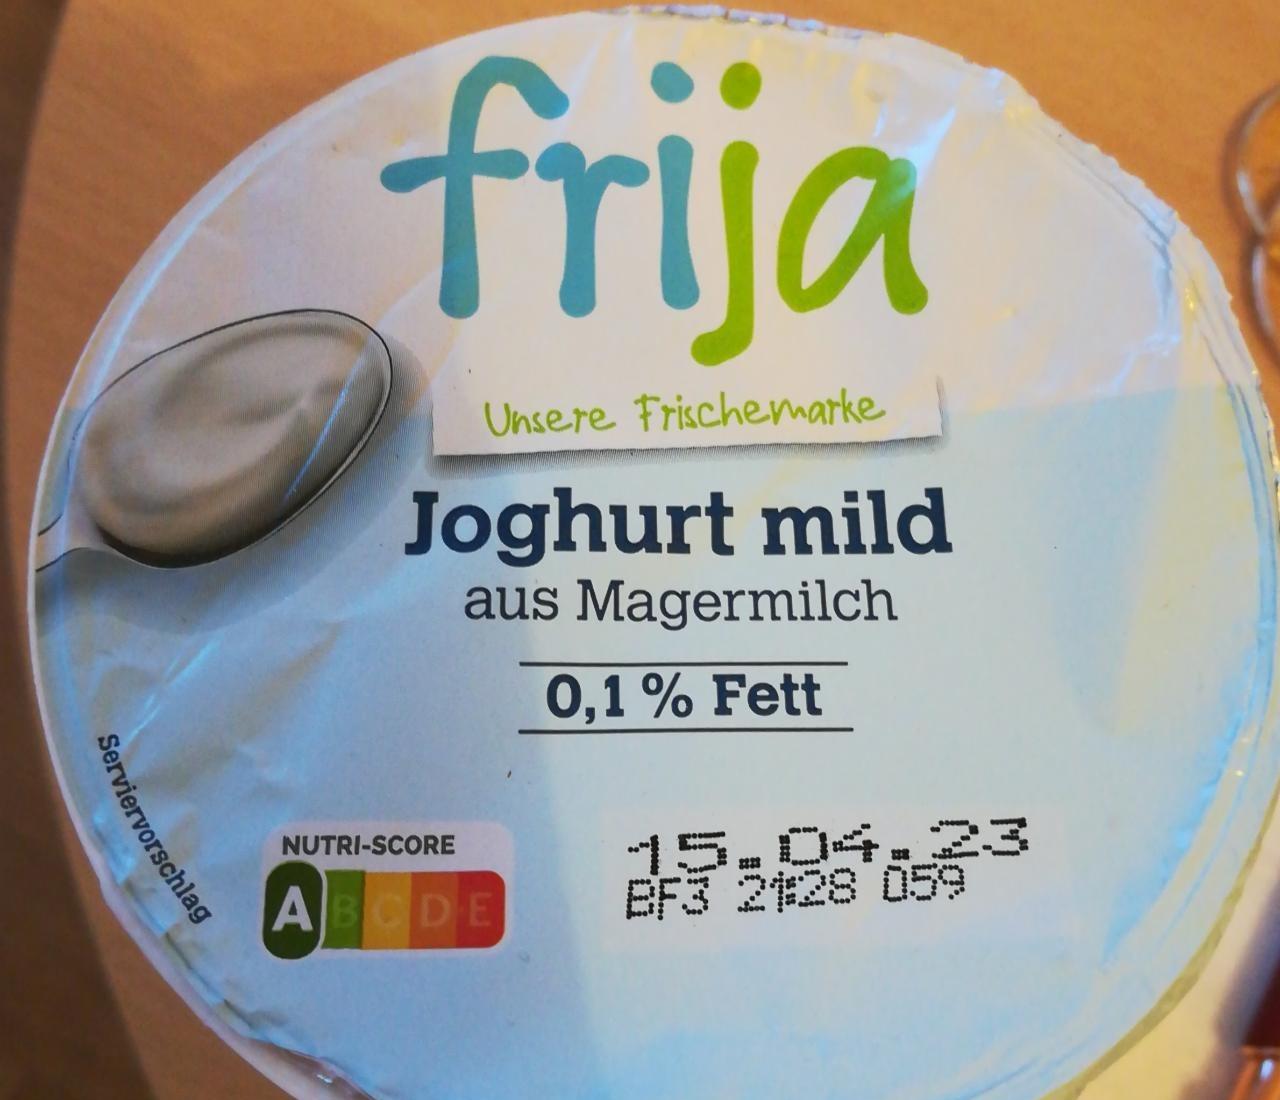 Fotografie - Joghurt mild aus Magermilch 0,1% Frija